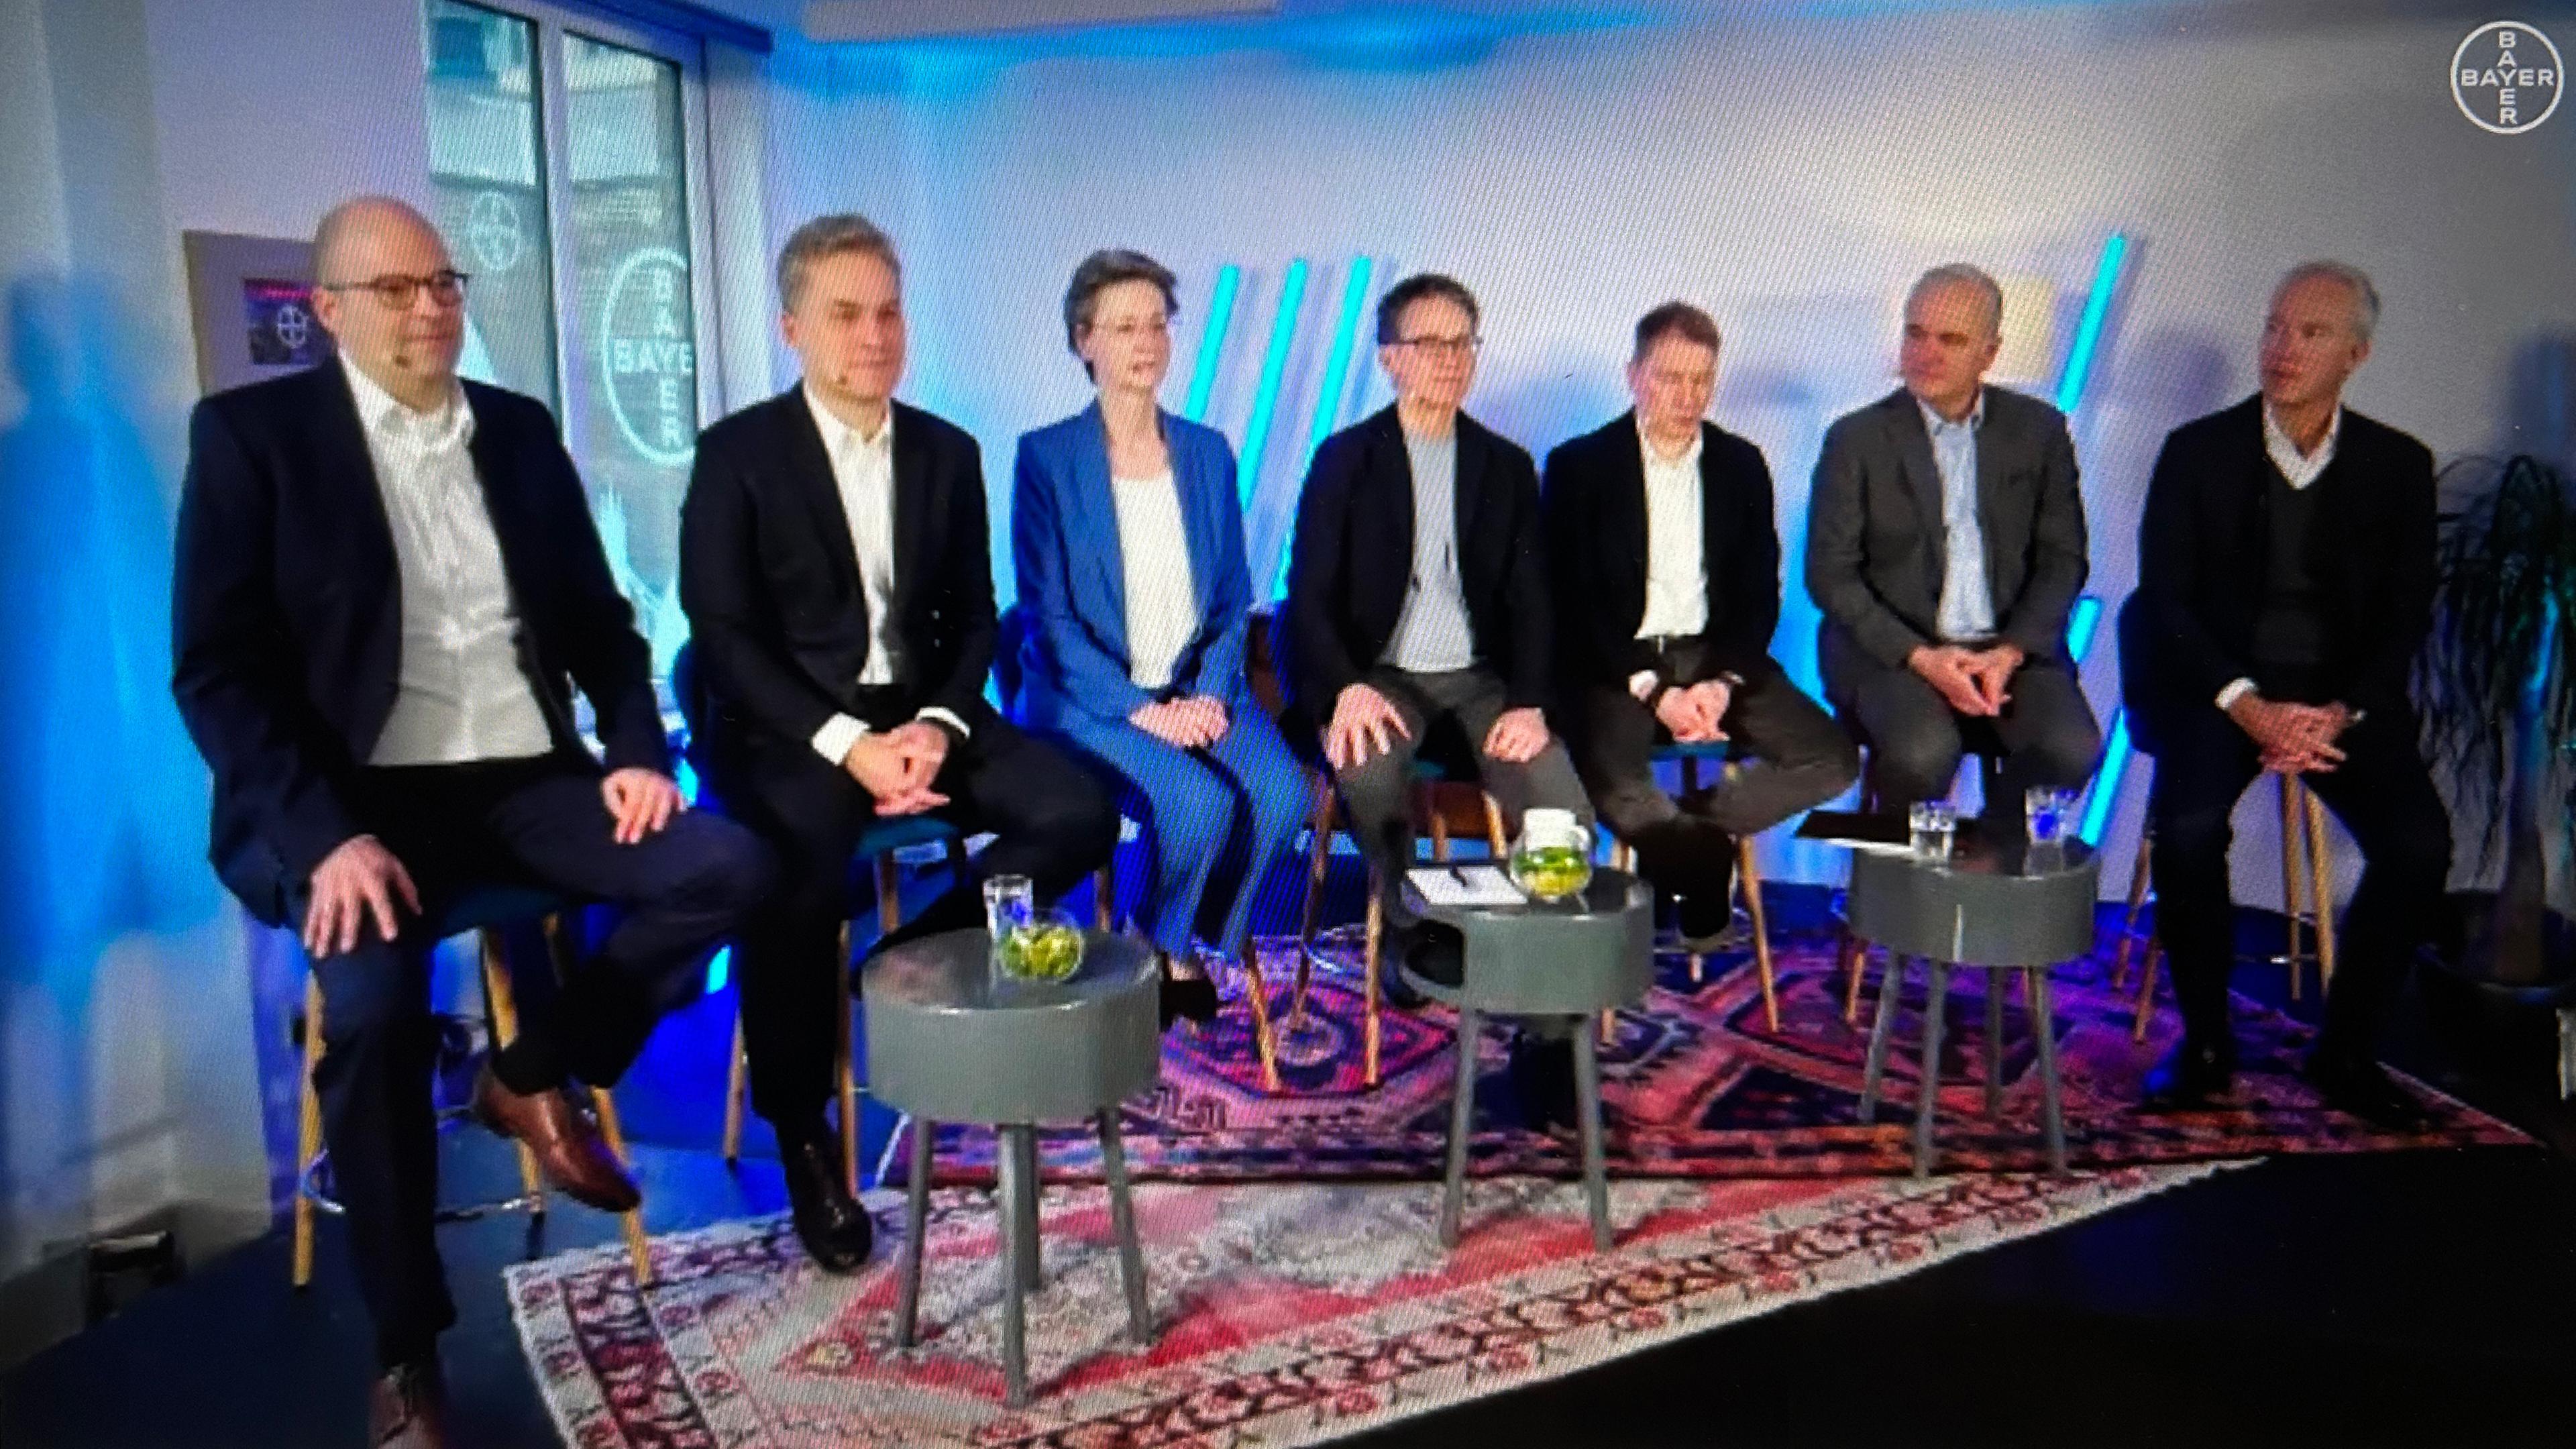 Bilanzpressekonferenz in einem Londoner Co-Working-Office: Die sieben Vorstandsmitglieder der Bayer AG. (Screenshot)